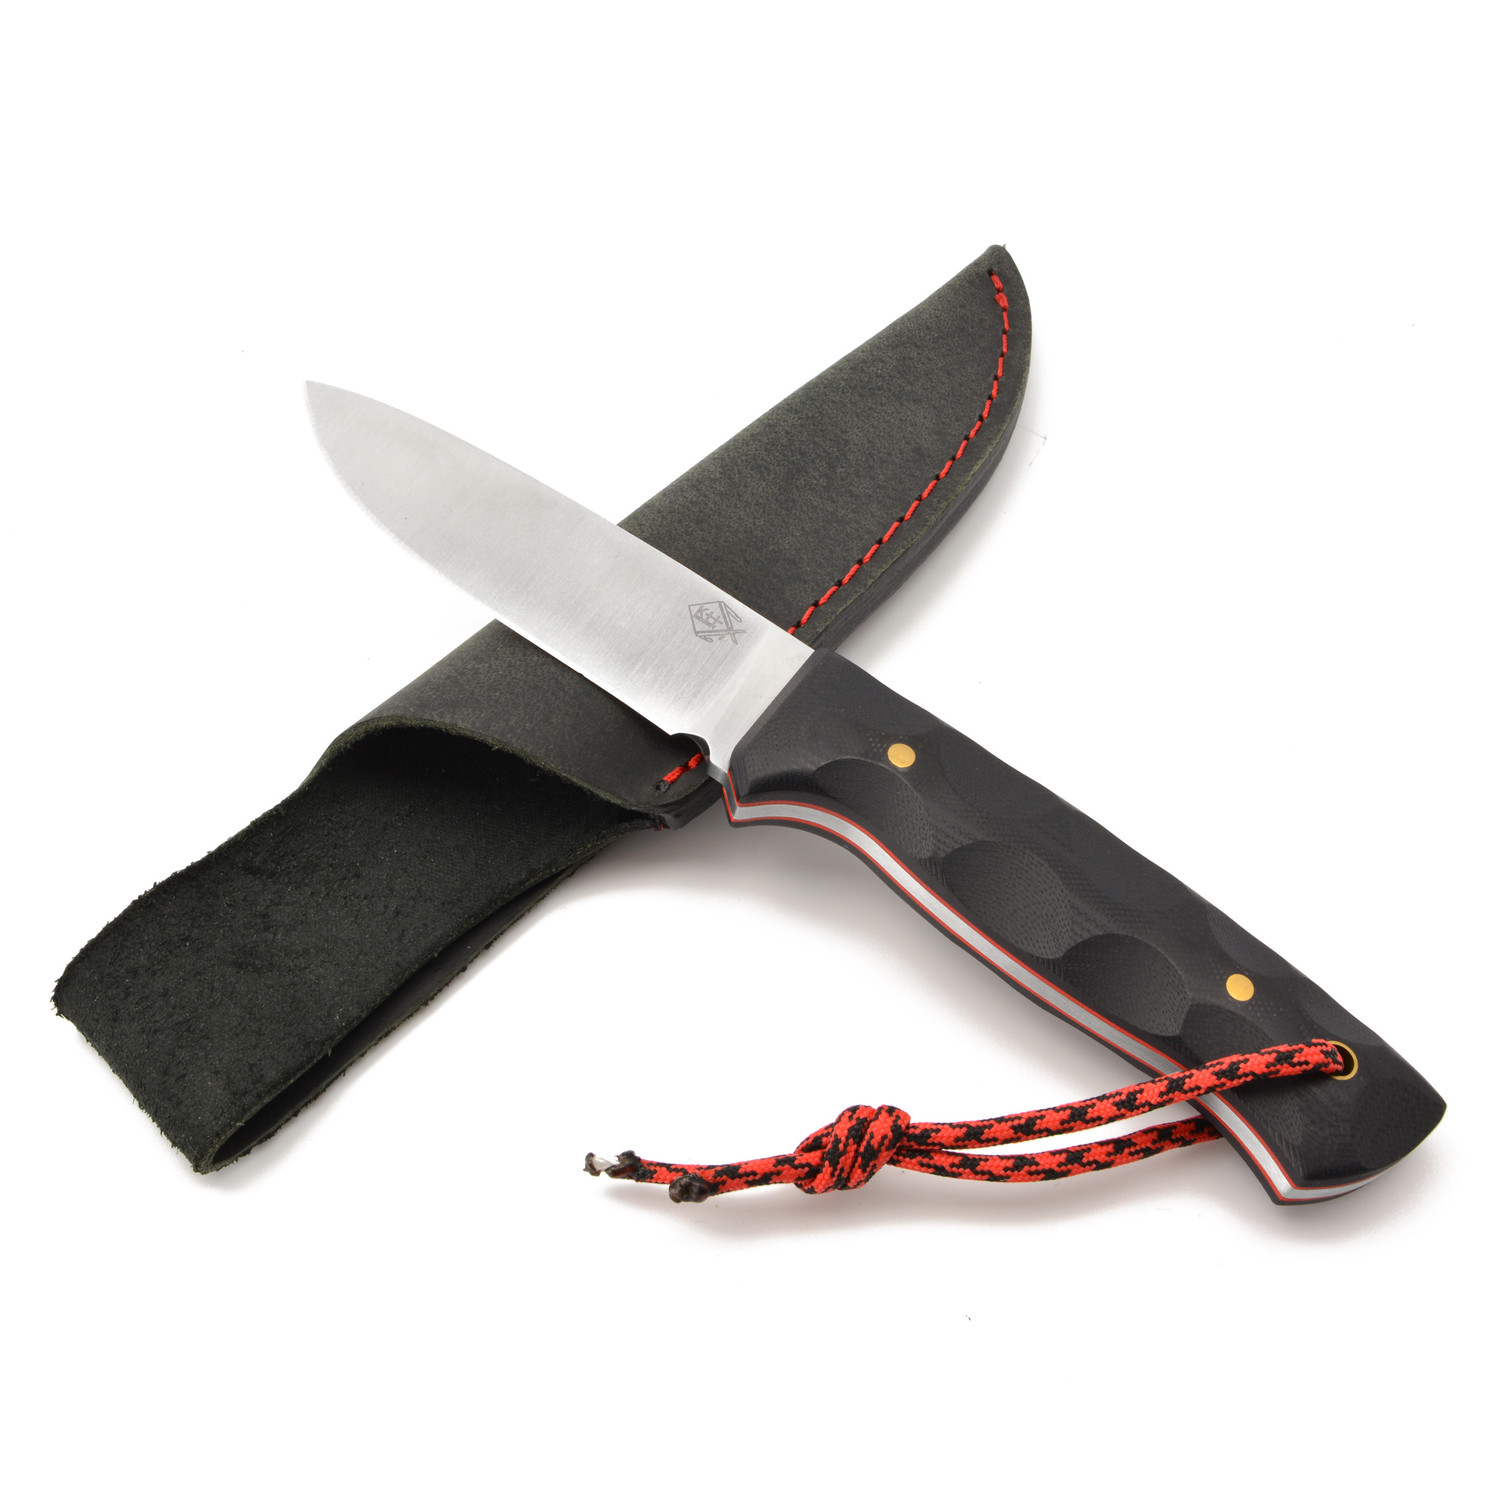 Feststehendes Messer Outdoor Pro mit G10 Schalen, inkl. Lederscheide